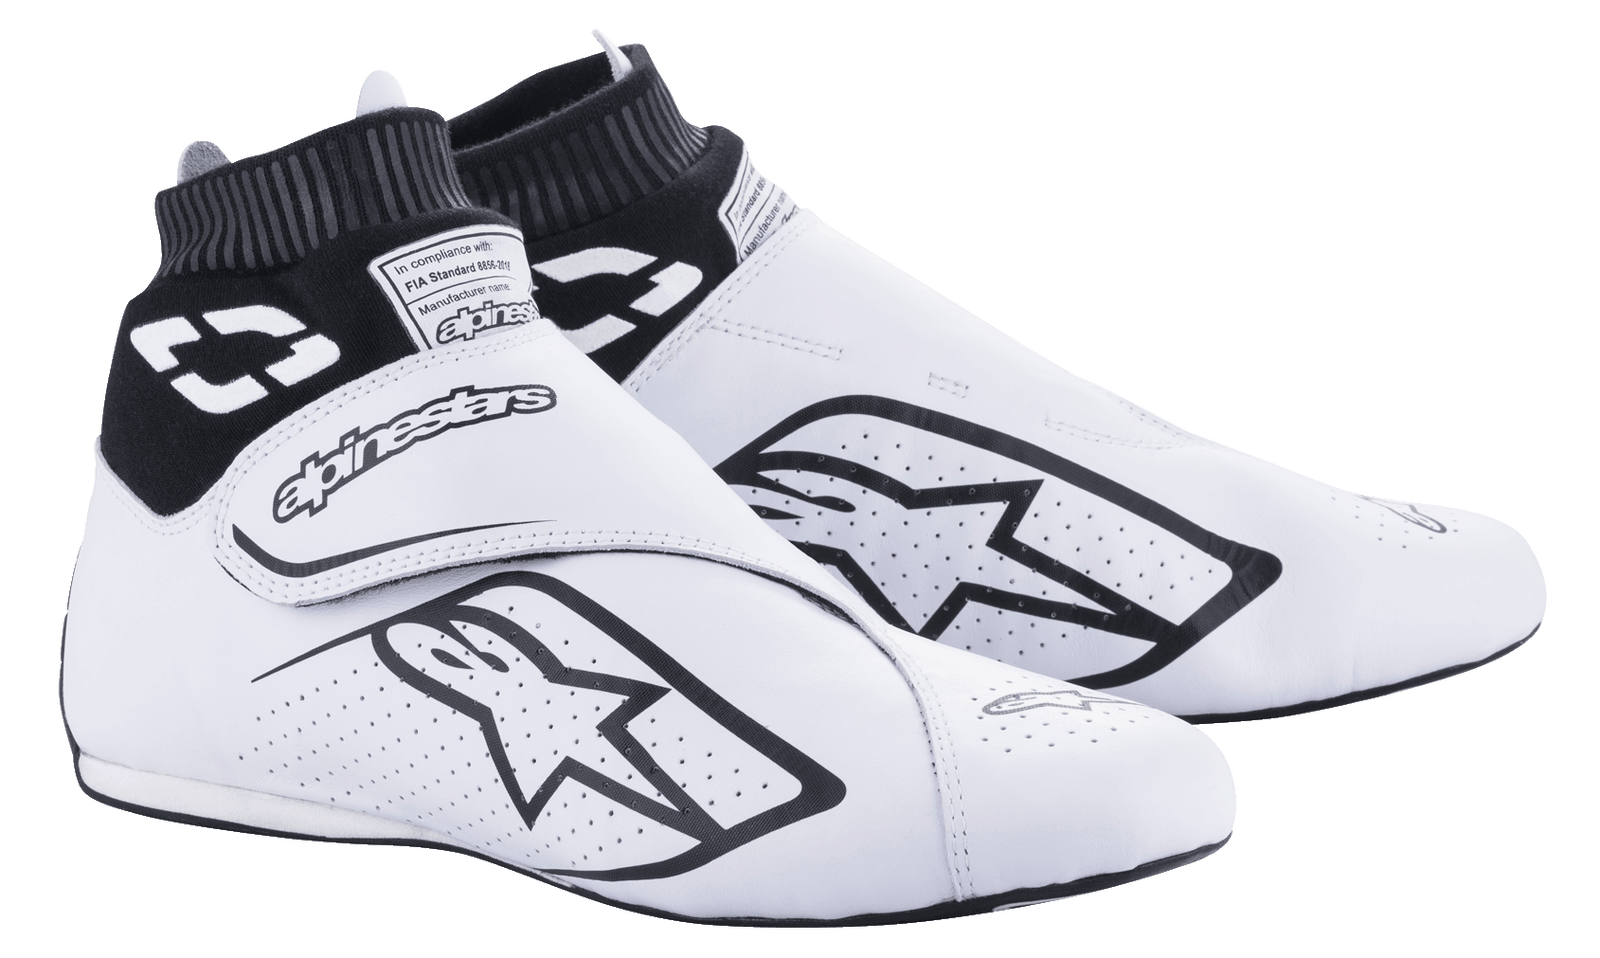 Supermono V2 Shoes FIA